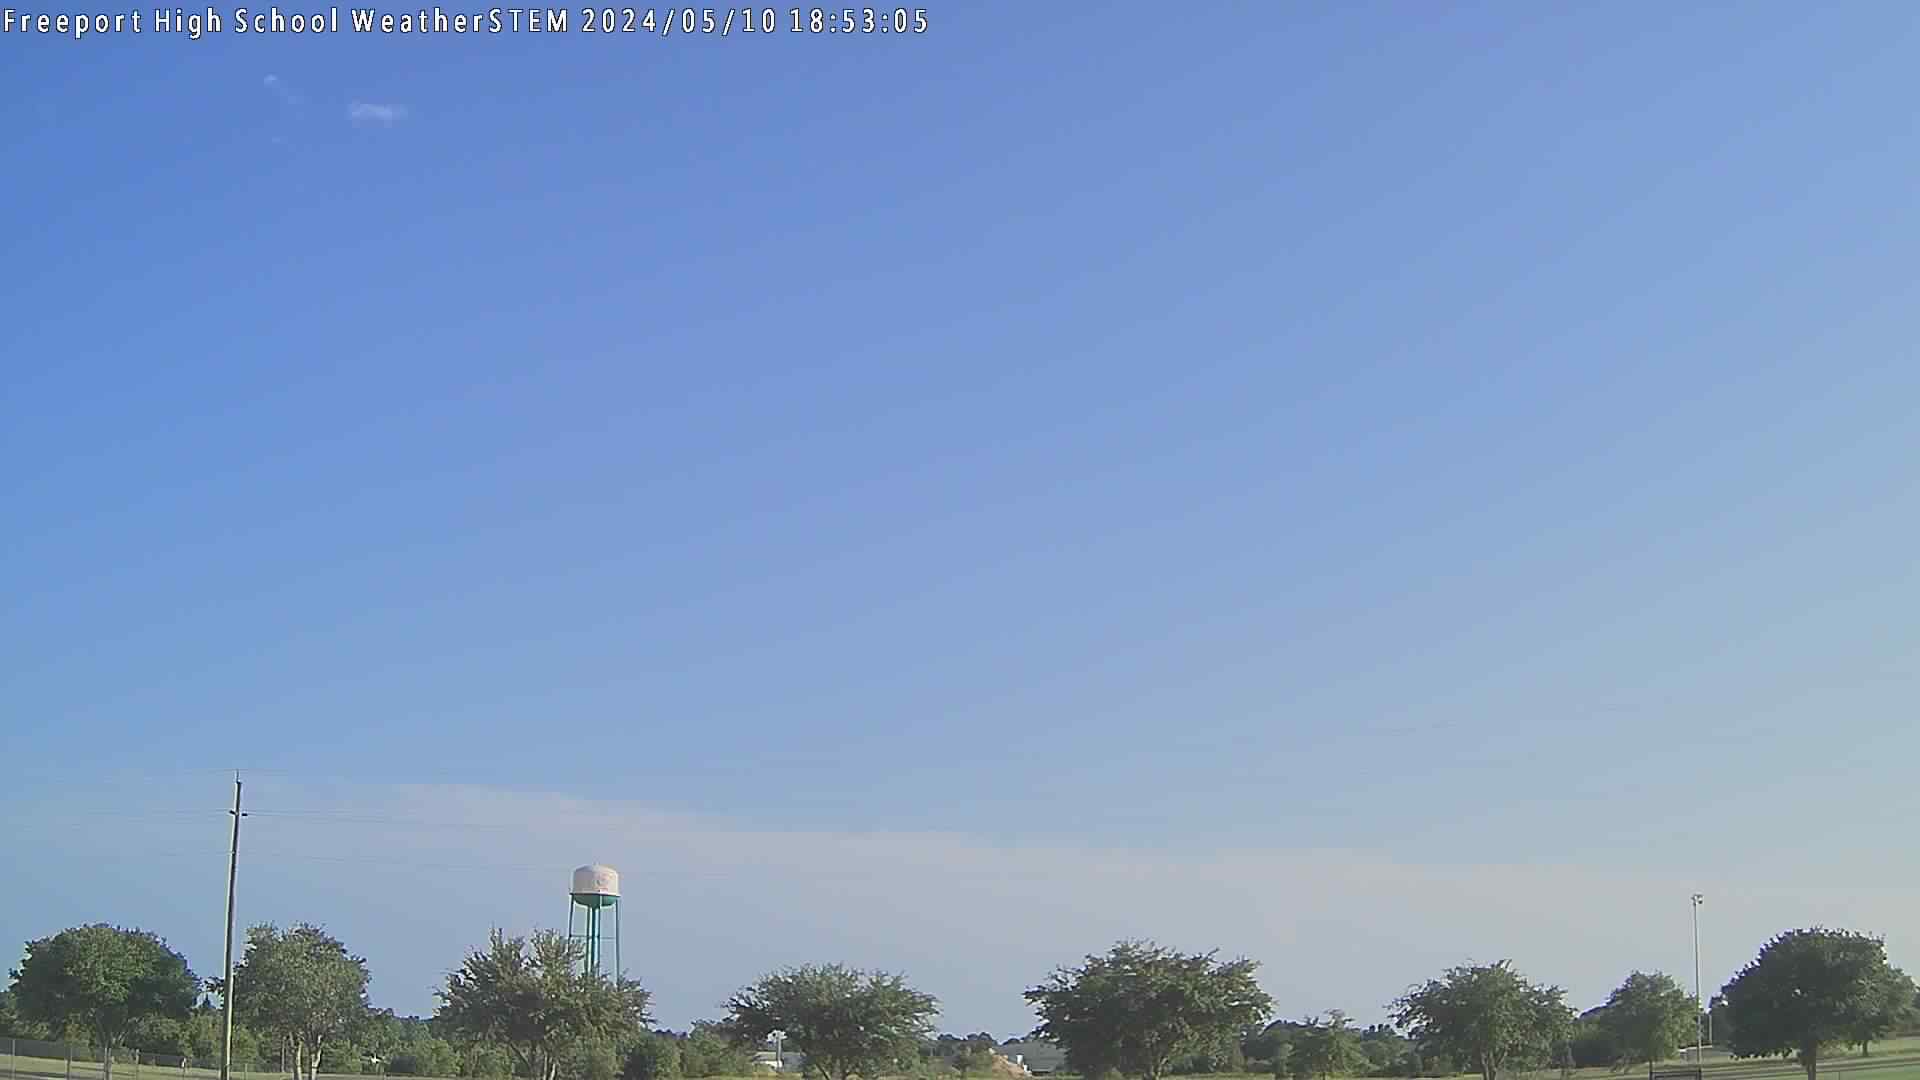  WeatherSTEM Cloud Camera FreeportHSWx in Walton County, Florida FL at Freeport High School